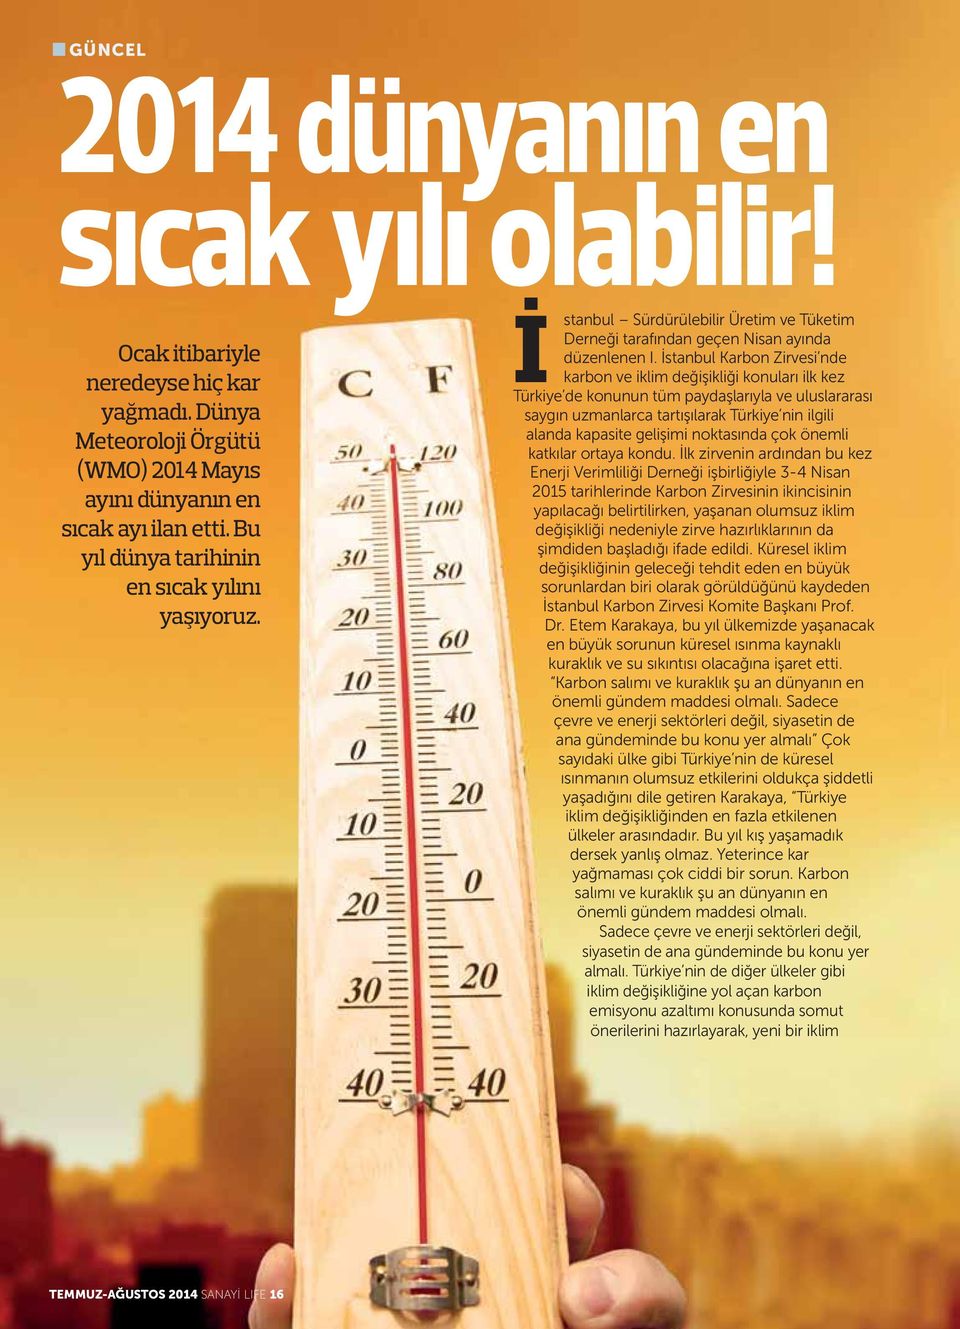 İstanbul Karbon Zirvesi nde karbon ve iklim değişikliği konuları ilk kez Türkiye de konunun tüm paydaşlarıyla ve uluslararası saygın uzmanlarca tartışılarak Türkiye nin ilgili alanda kapasite